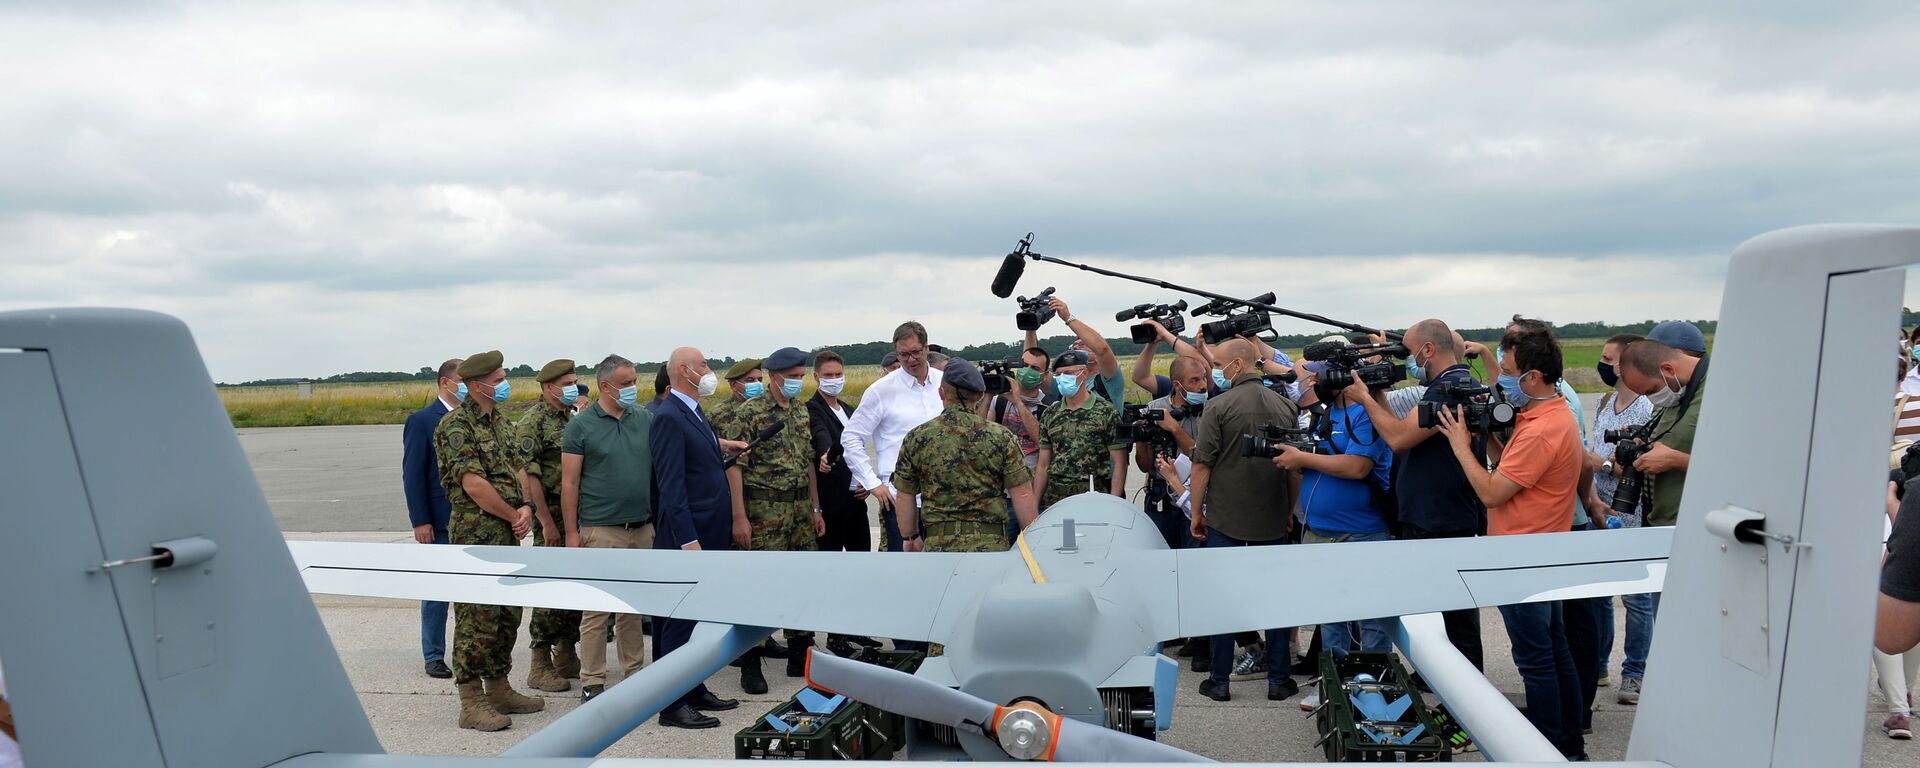 Представљање нових дронова Војске Србије који су купљени од Кине на аеродрому у Батајници - Sputnik Србија, 1920, 05.08.2020